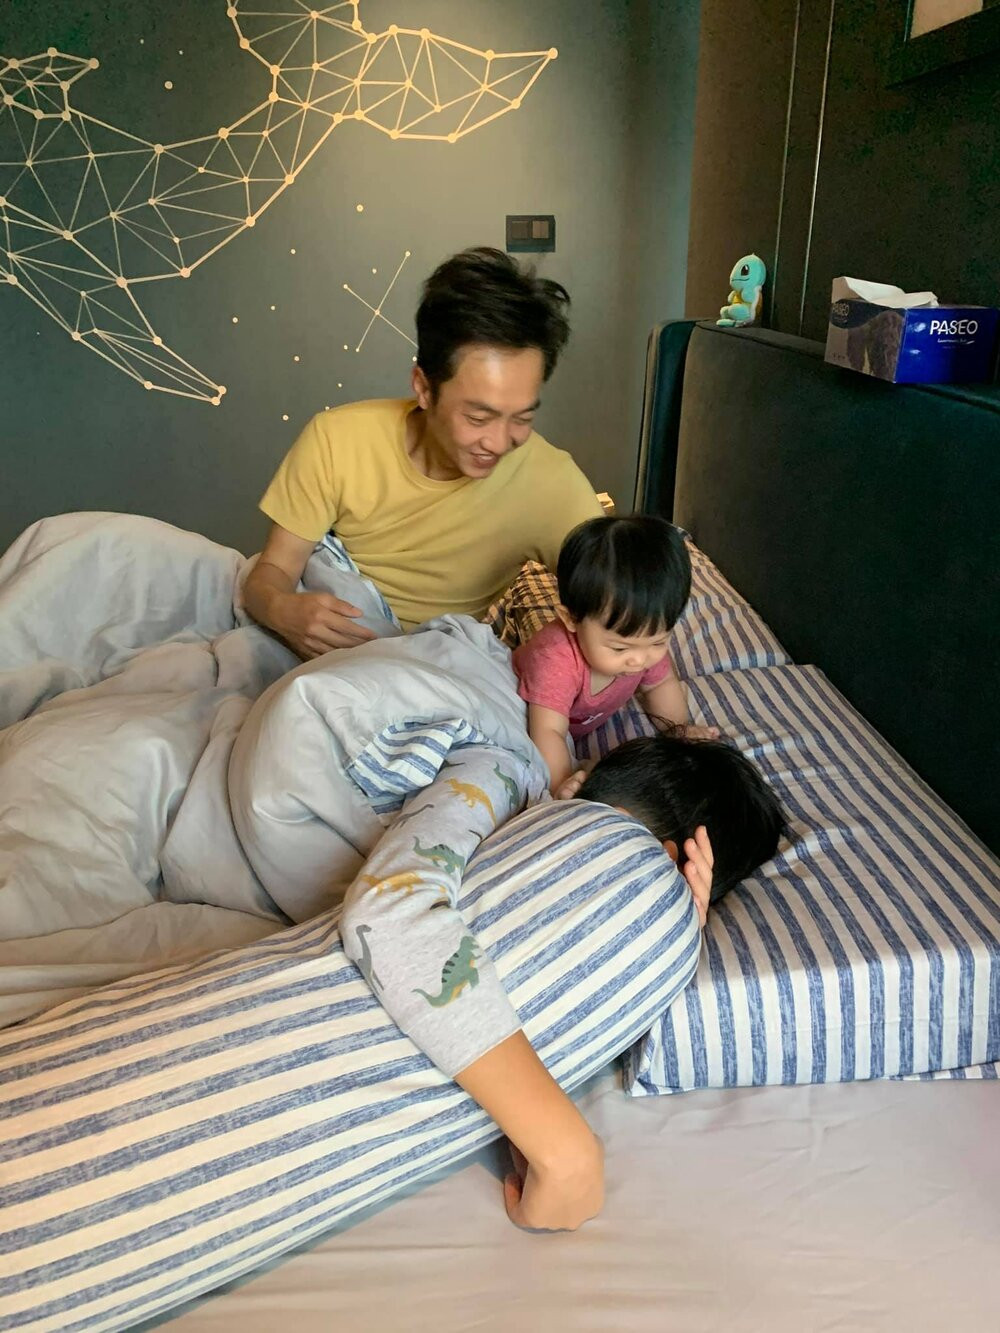 Đàm Thu Trang khoe cảnh con gái làm chị đại trong nhà: Khi chị ngủ phải nói khẽ cười duyên